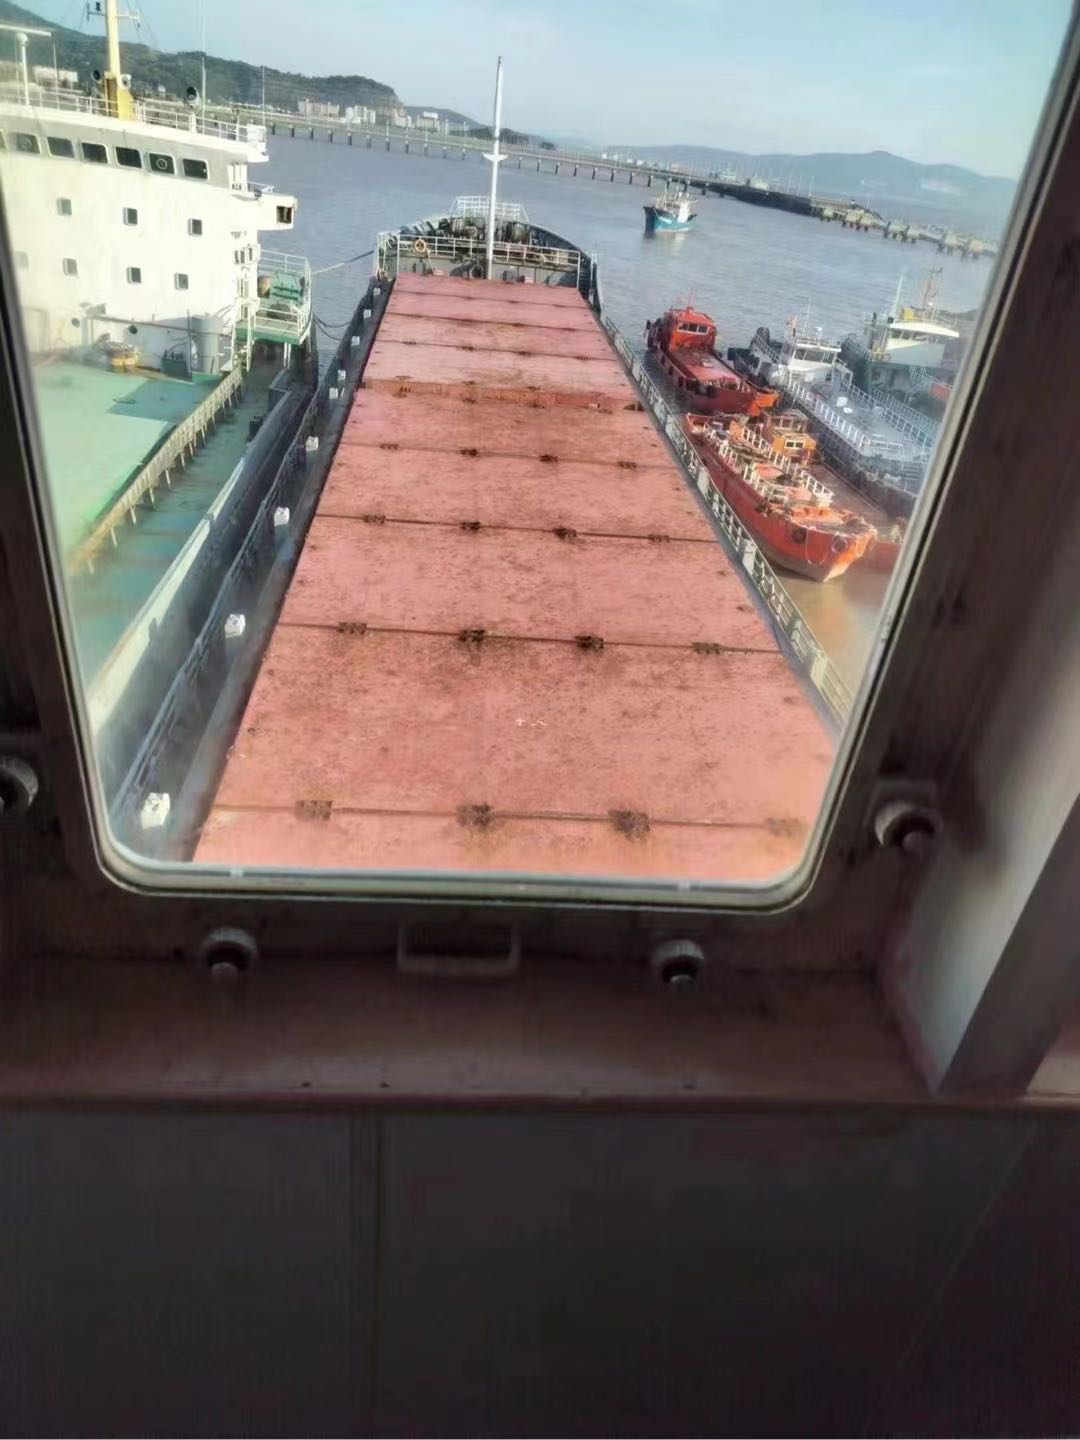 出售3280吨双壳多用途集装箱船 装载集装箱：168TEU